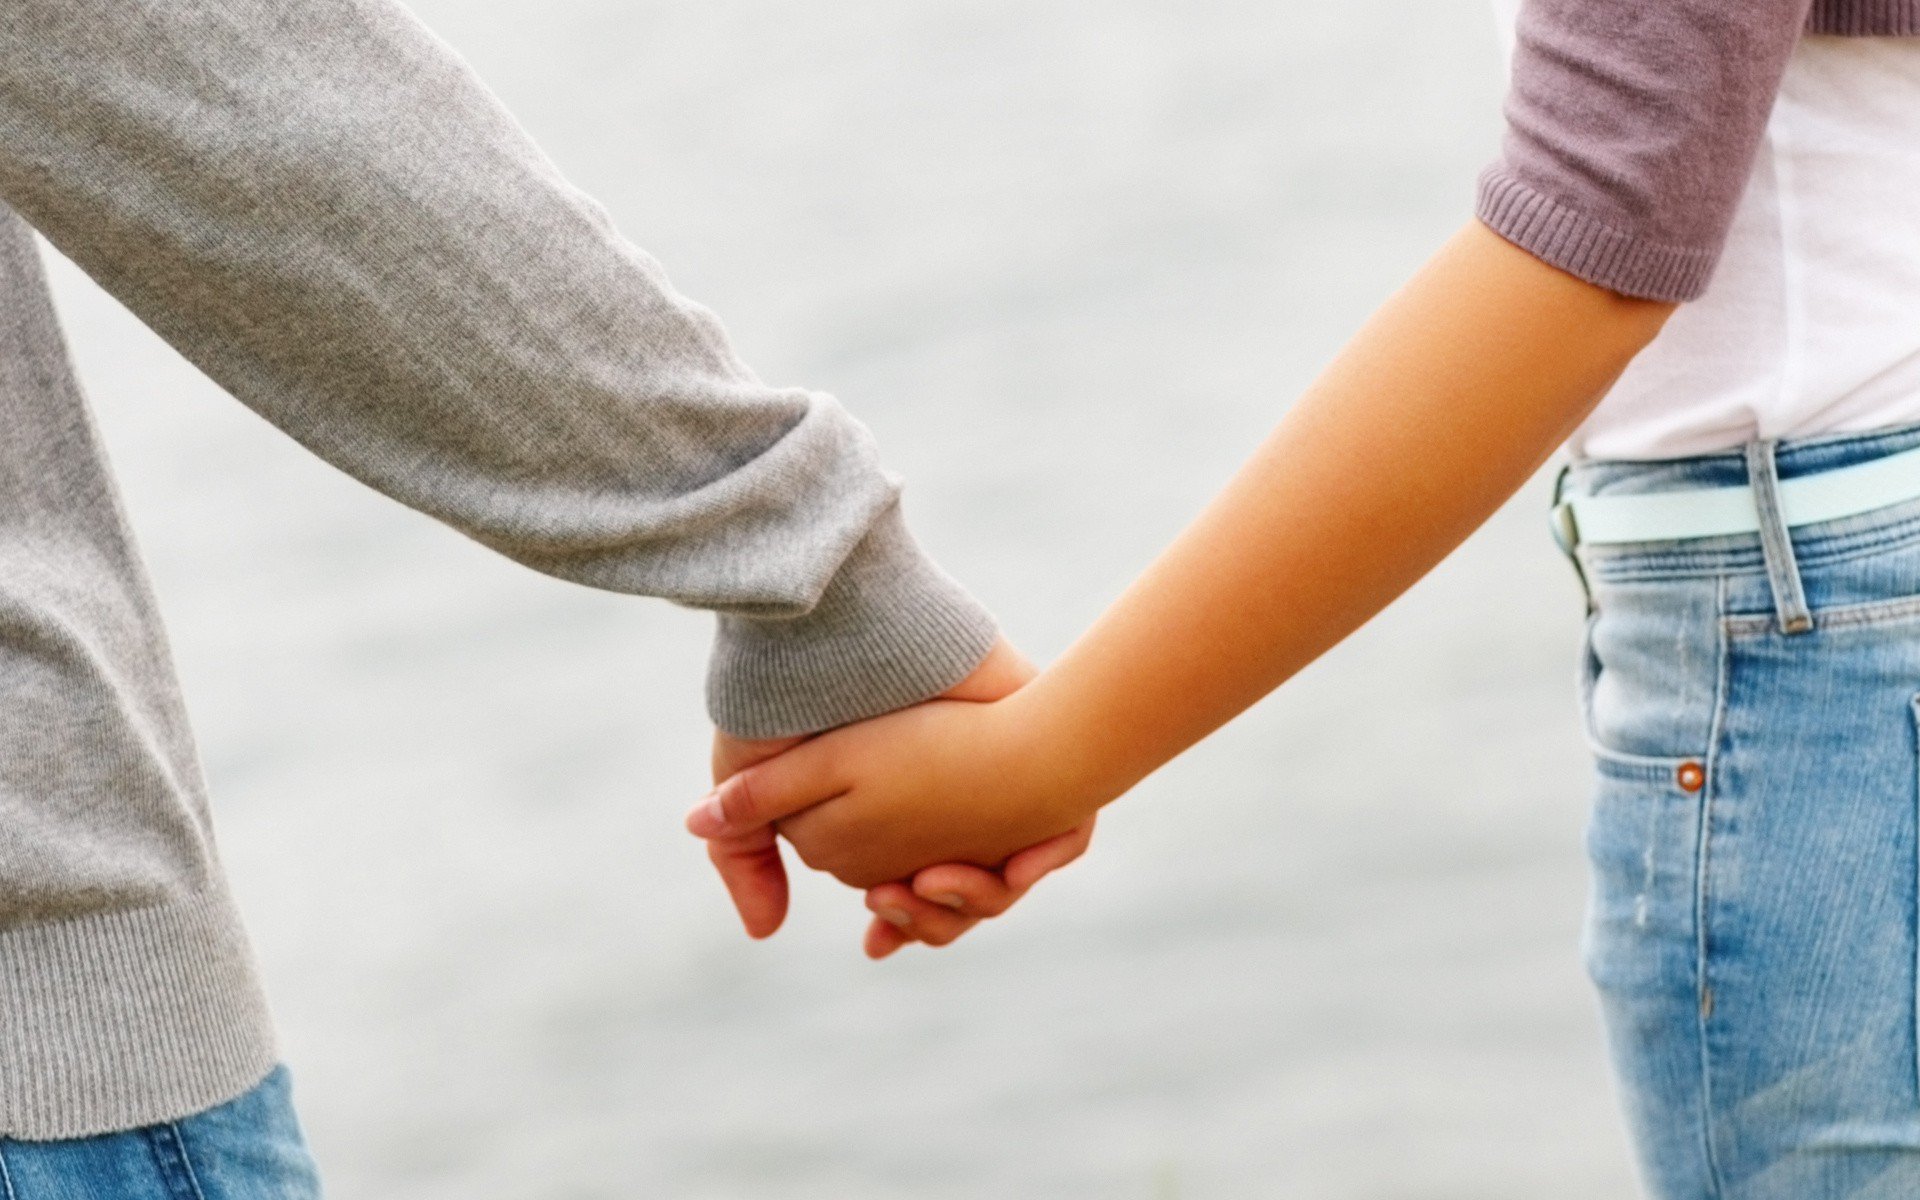 Действие лучшему другу. Подростки держатся за руки. Мальчик держит девочку за руку. Примирение влюбленных. Фото руки влюбленных.